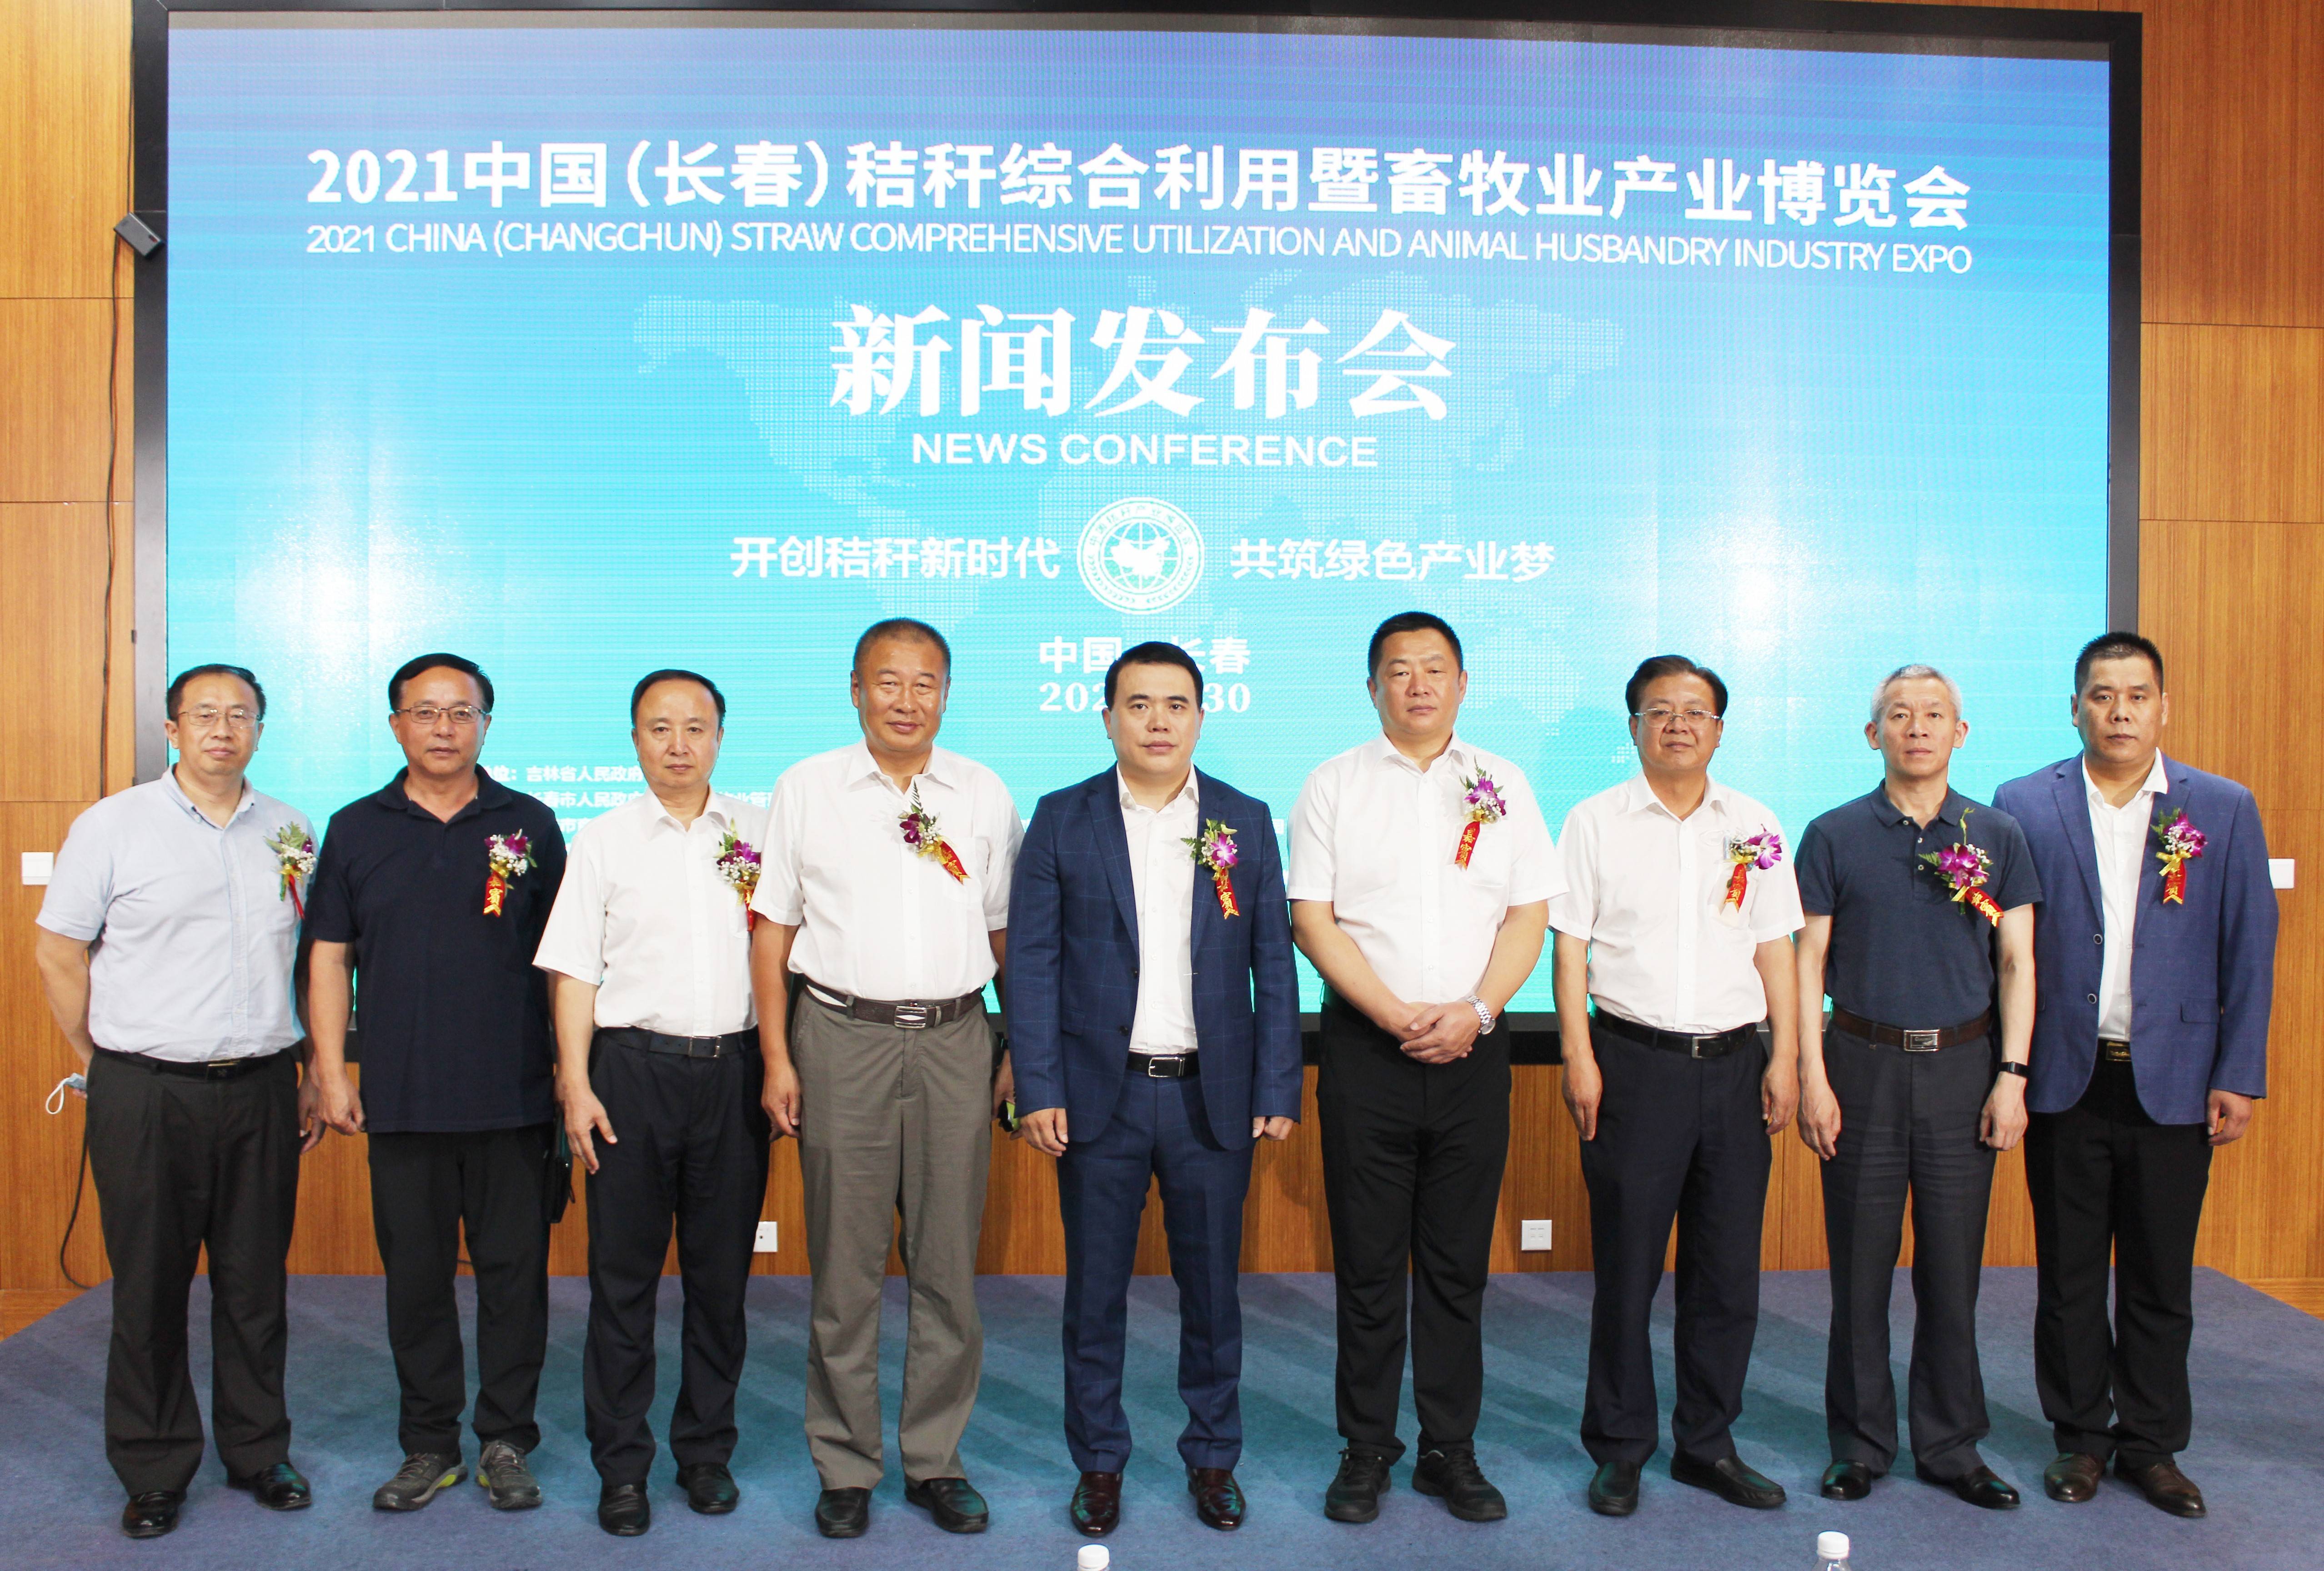 2021中国（长春）秸秆综合利用暨畜牧业产业博览会9月4日-6日在长春举行